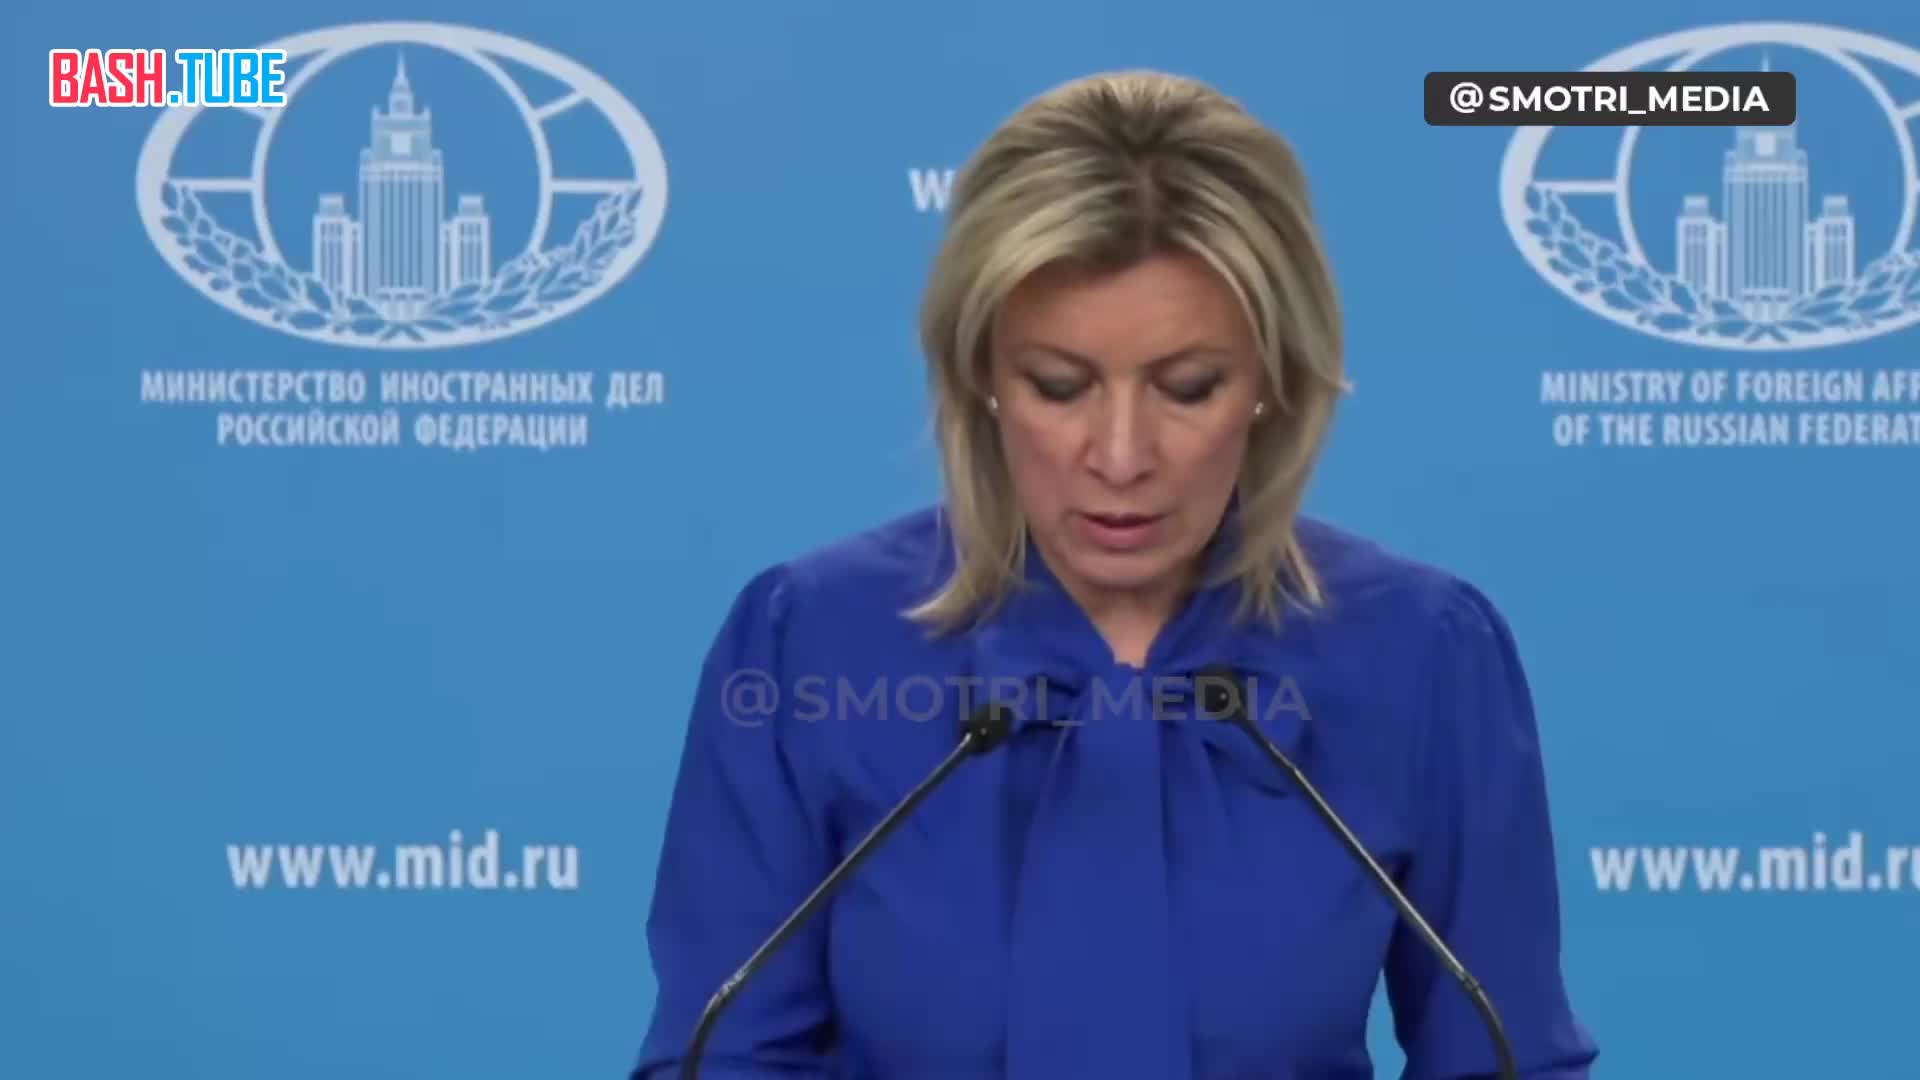 ⁣ За агрессивными действиями против Крыма последует удар возмездия, заявила представитель МИД РФ Мария Захарова